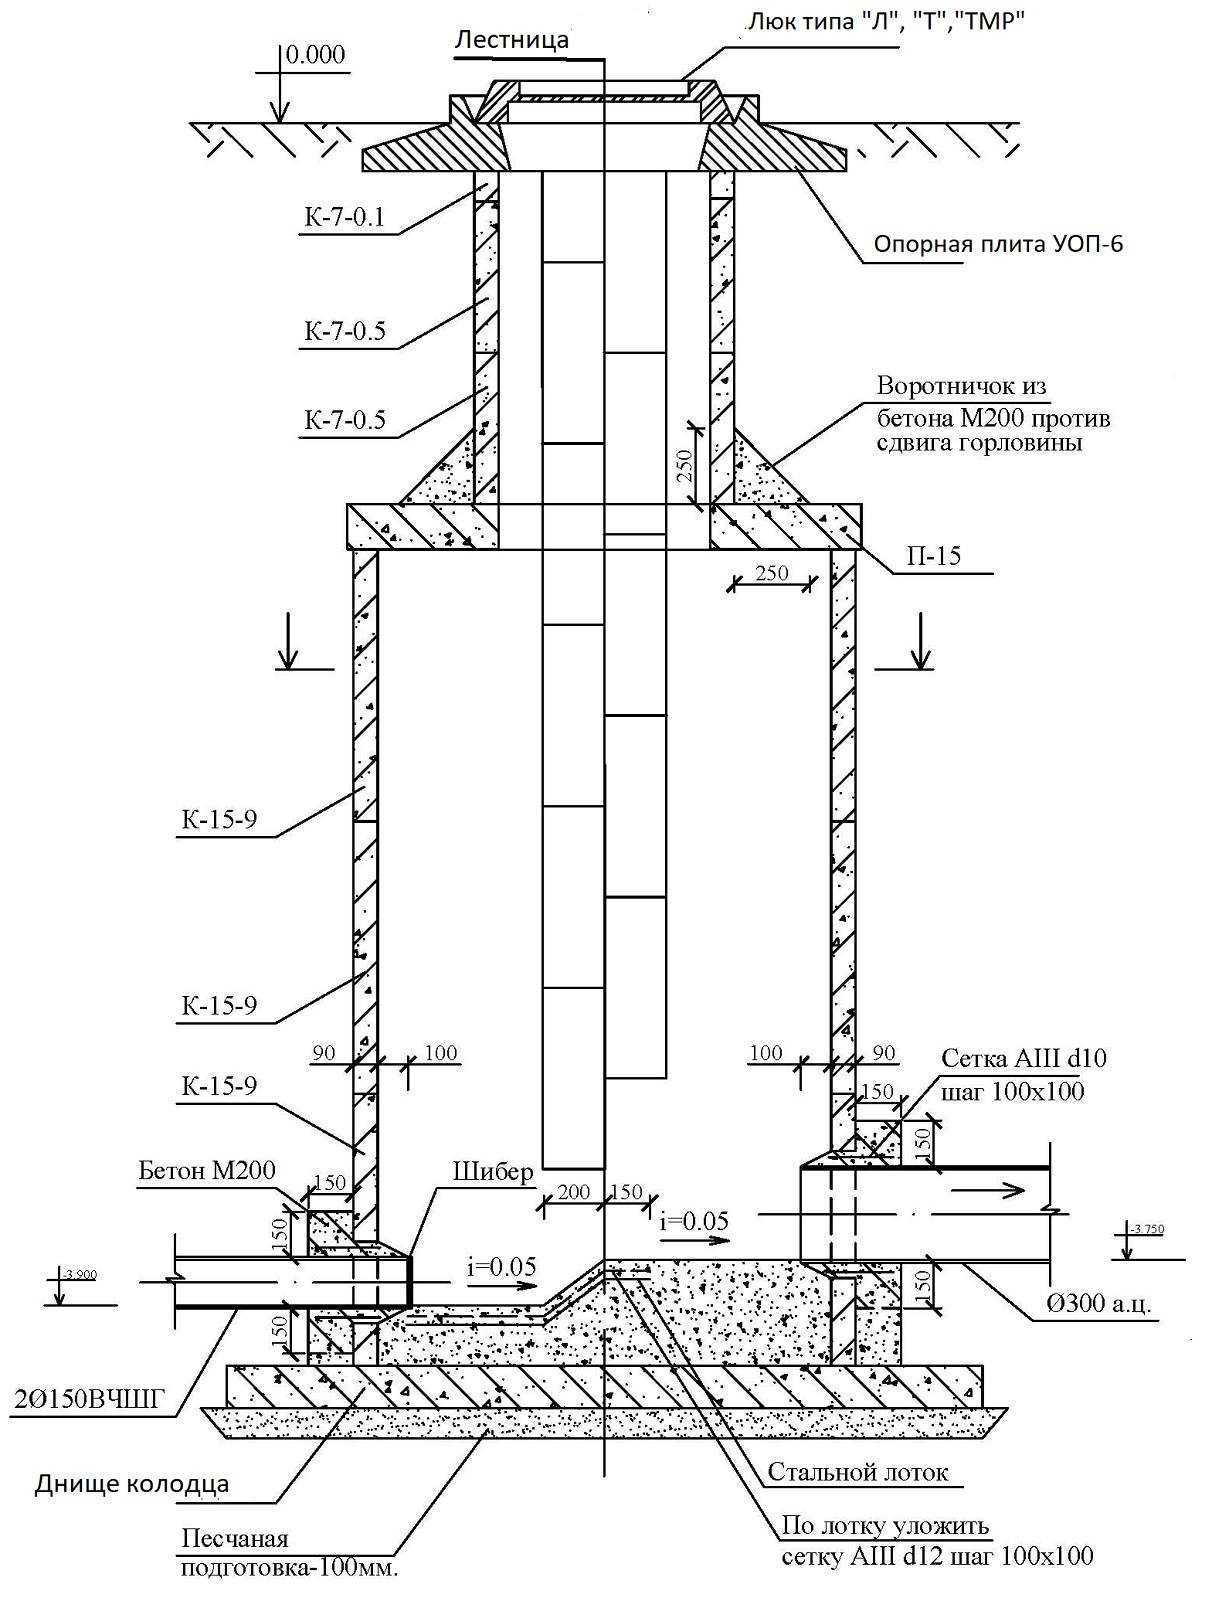 Колодец водопроводный: снип, устройство и монтаж колец